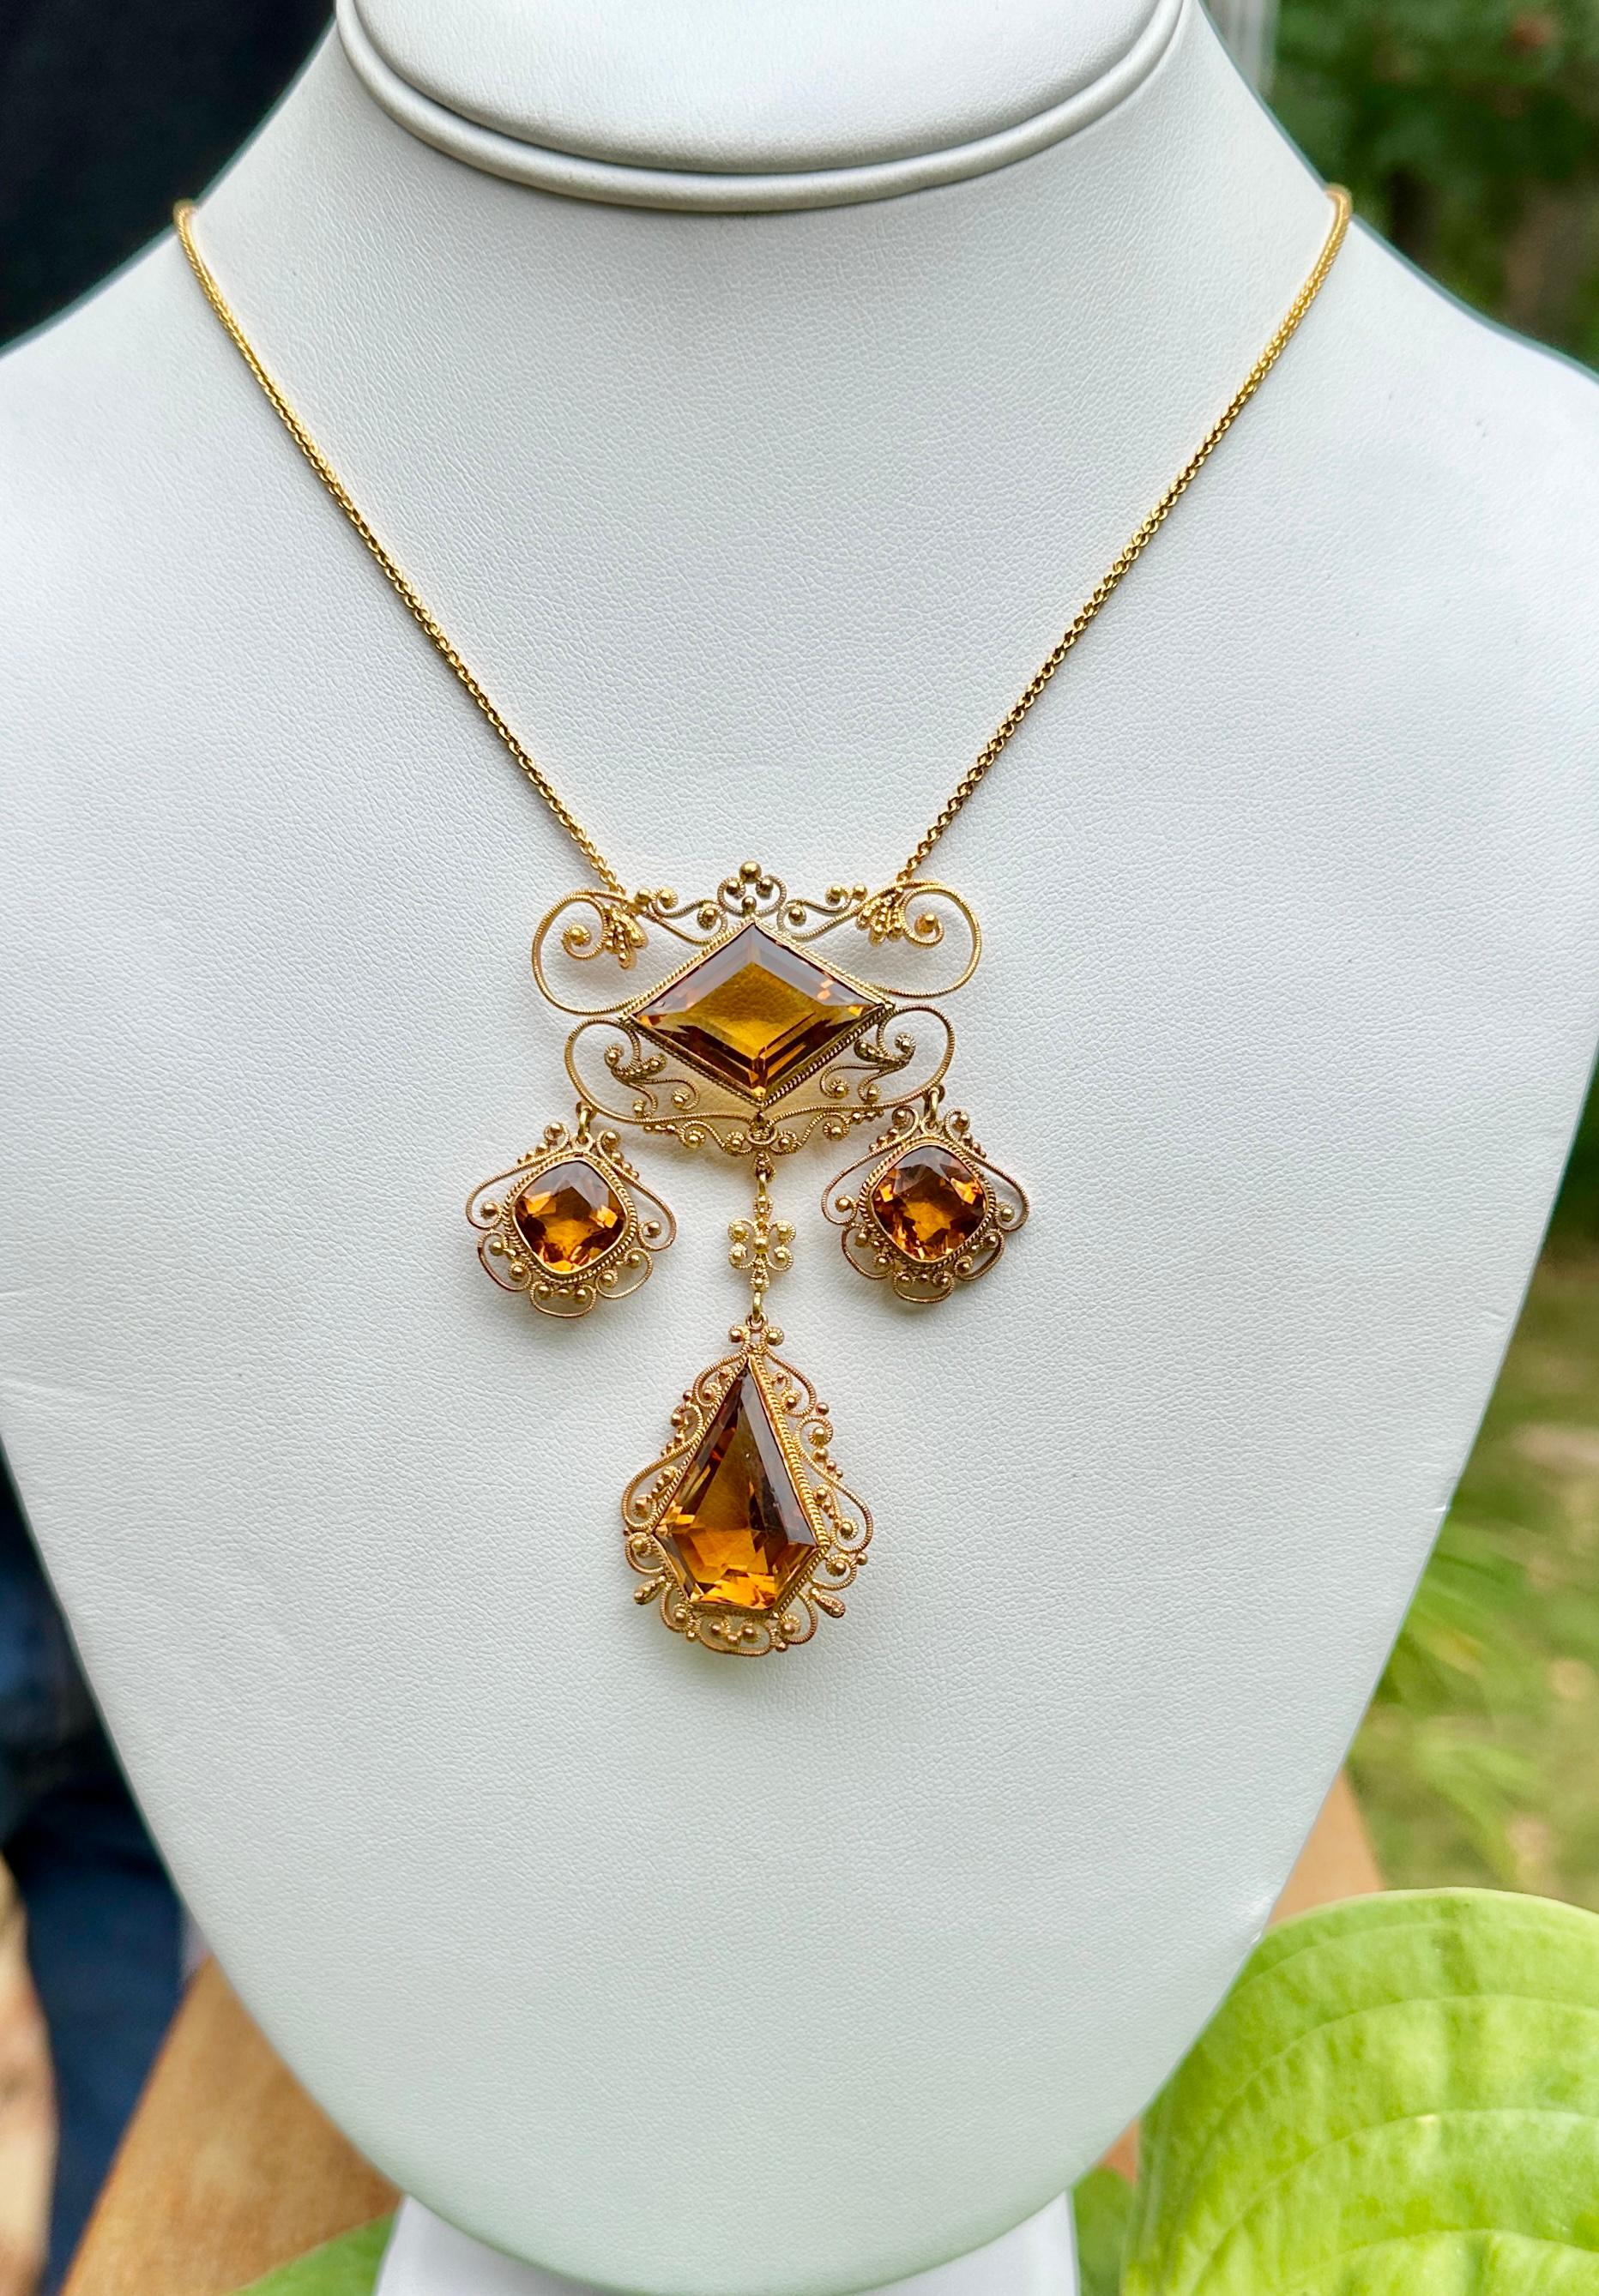 Nous sommes ravis de vous proposer ce magnifique collier à pendentifs en citrine Belle Epoque - Victorien en or jaune 14 carats.  Ce magnifique collier ancien présente quatre citrines naturelles à facettes d'une couleur magnifique et d'une taille